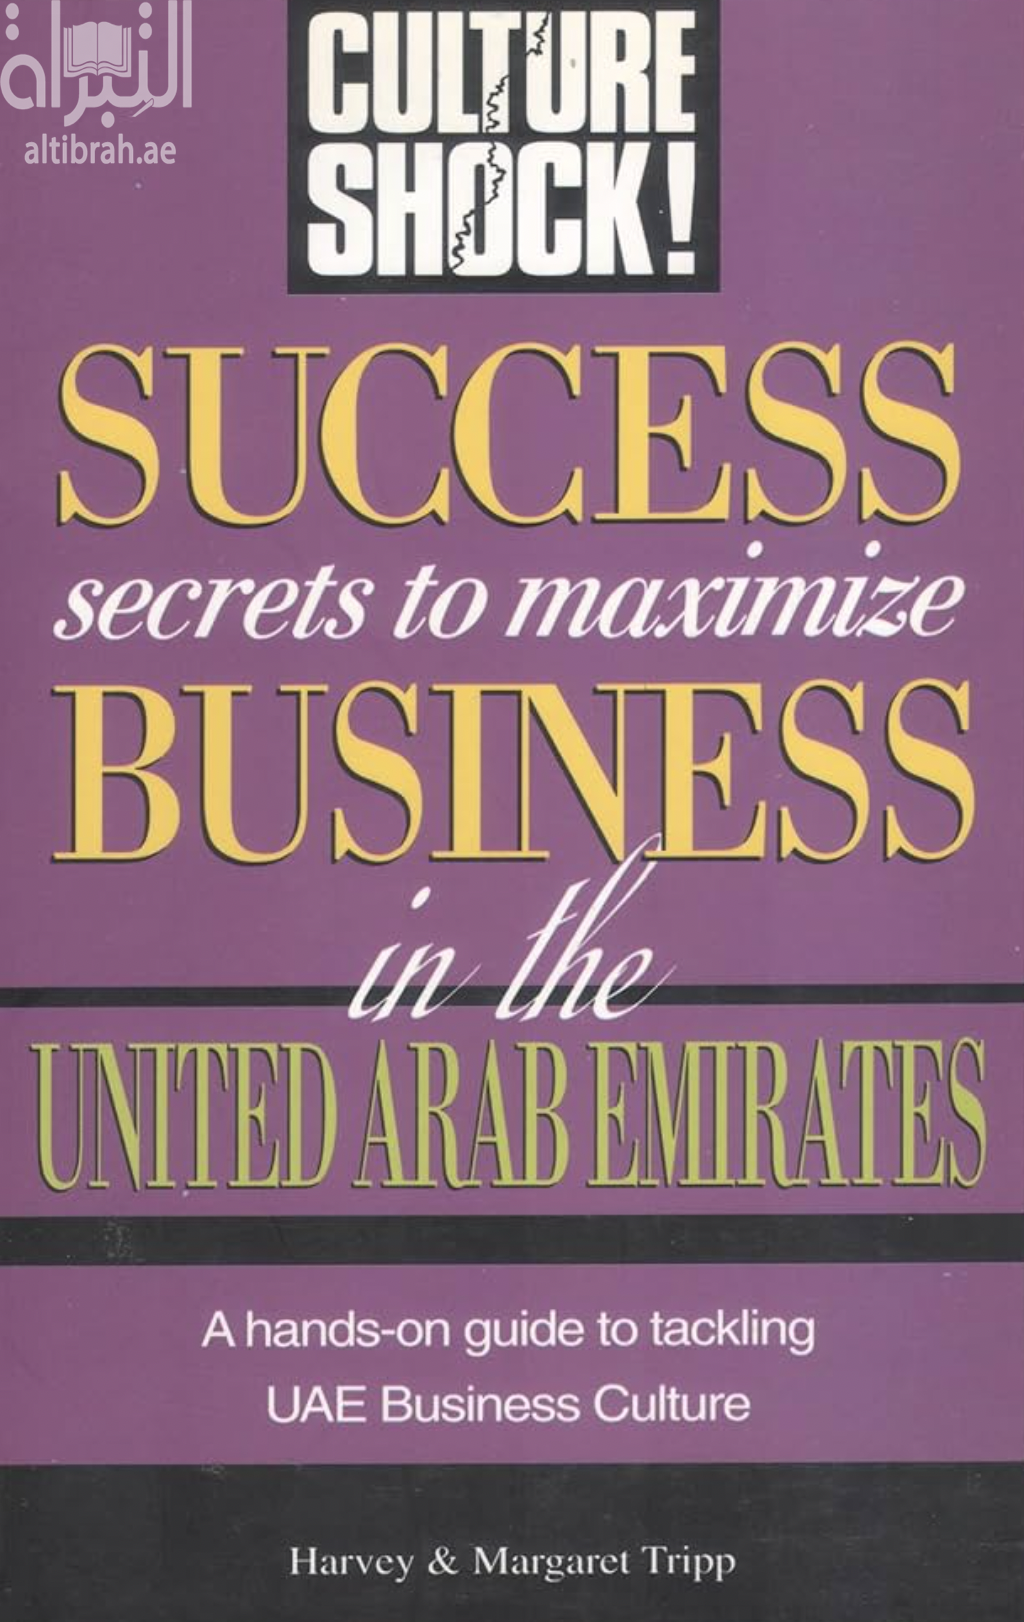 كتاب Culture shock! success secrets to maximize business in the United Arab Emirates